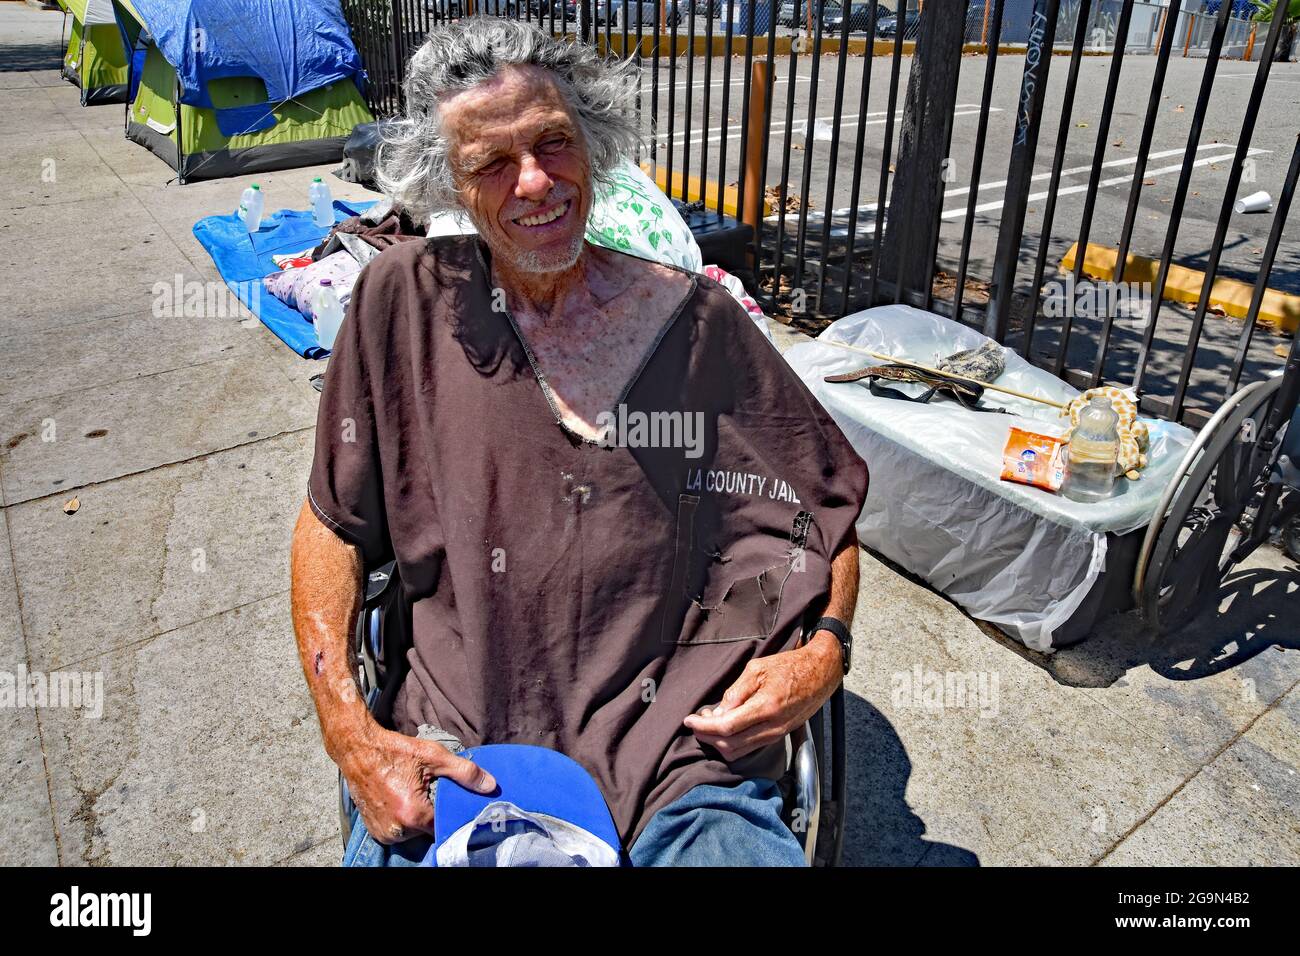 Skid Row, Downtown Central Los Angeles, Kalifornien, USA, Juni 2021. Los Angeles steht vor einer humanitären Krise, die es noch nie zuvor gesehen hat, da Obdachlosigkeit und Drogenmissbrauch in dem Gebiet namens „Skid Row“ zunehmen. Die Covid-19-Pandemie hat das Problem noch verstärkt, da die Immobilienpreise durch das Dach gingen, die Arbeitslosenquote zunahm und die illegale Einwanderung eine Explosion in der Obdachlosigkeit verursachte. Schätzungsweise 70,000 Menschen durchstreifen die Straßen und campen in der Stadt in der Nähe der ein- und Ausgänge der Autobahnen, unter Brücken und Überführungen, in Parks und leerstehenden Plätzen und auf Gehwegen. Psychische Erkrankungen und Drogenmissbrauch Stockfoto